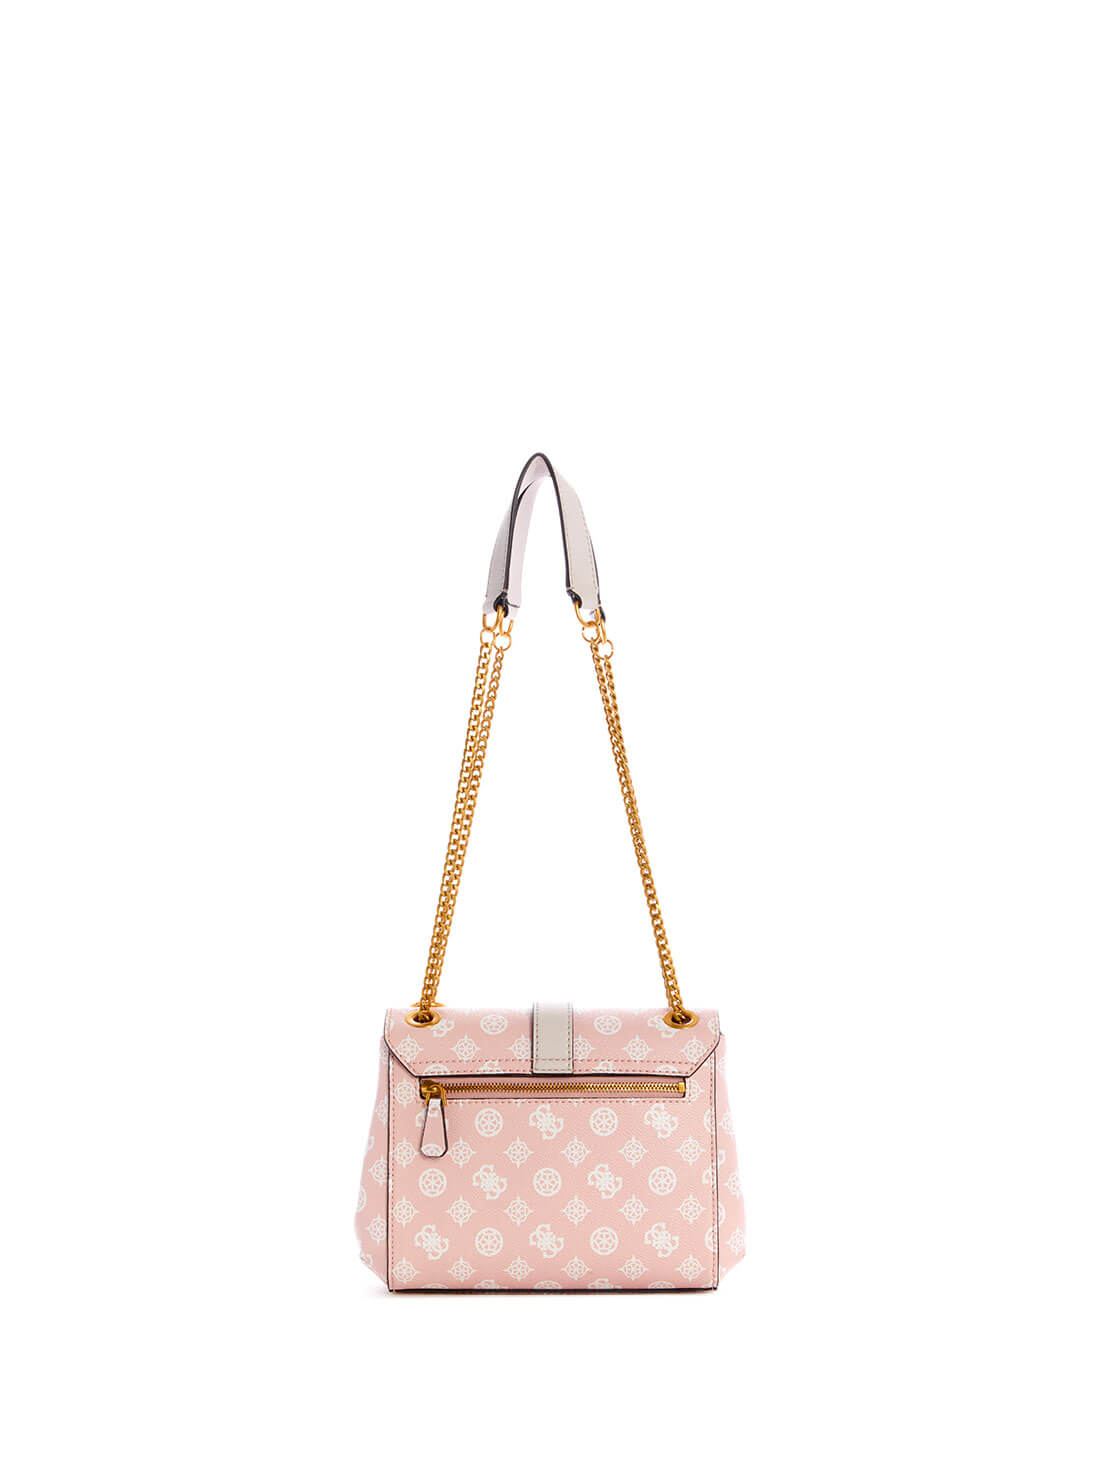 GUESS Pink Logo Briana Crossbody Bag back view